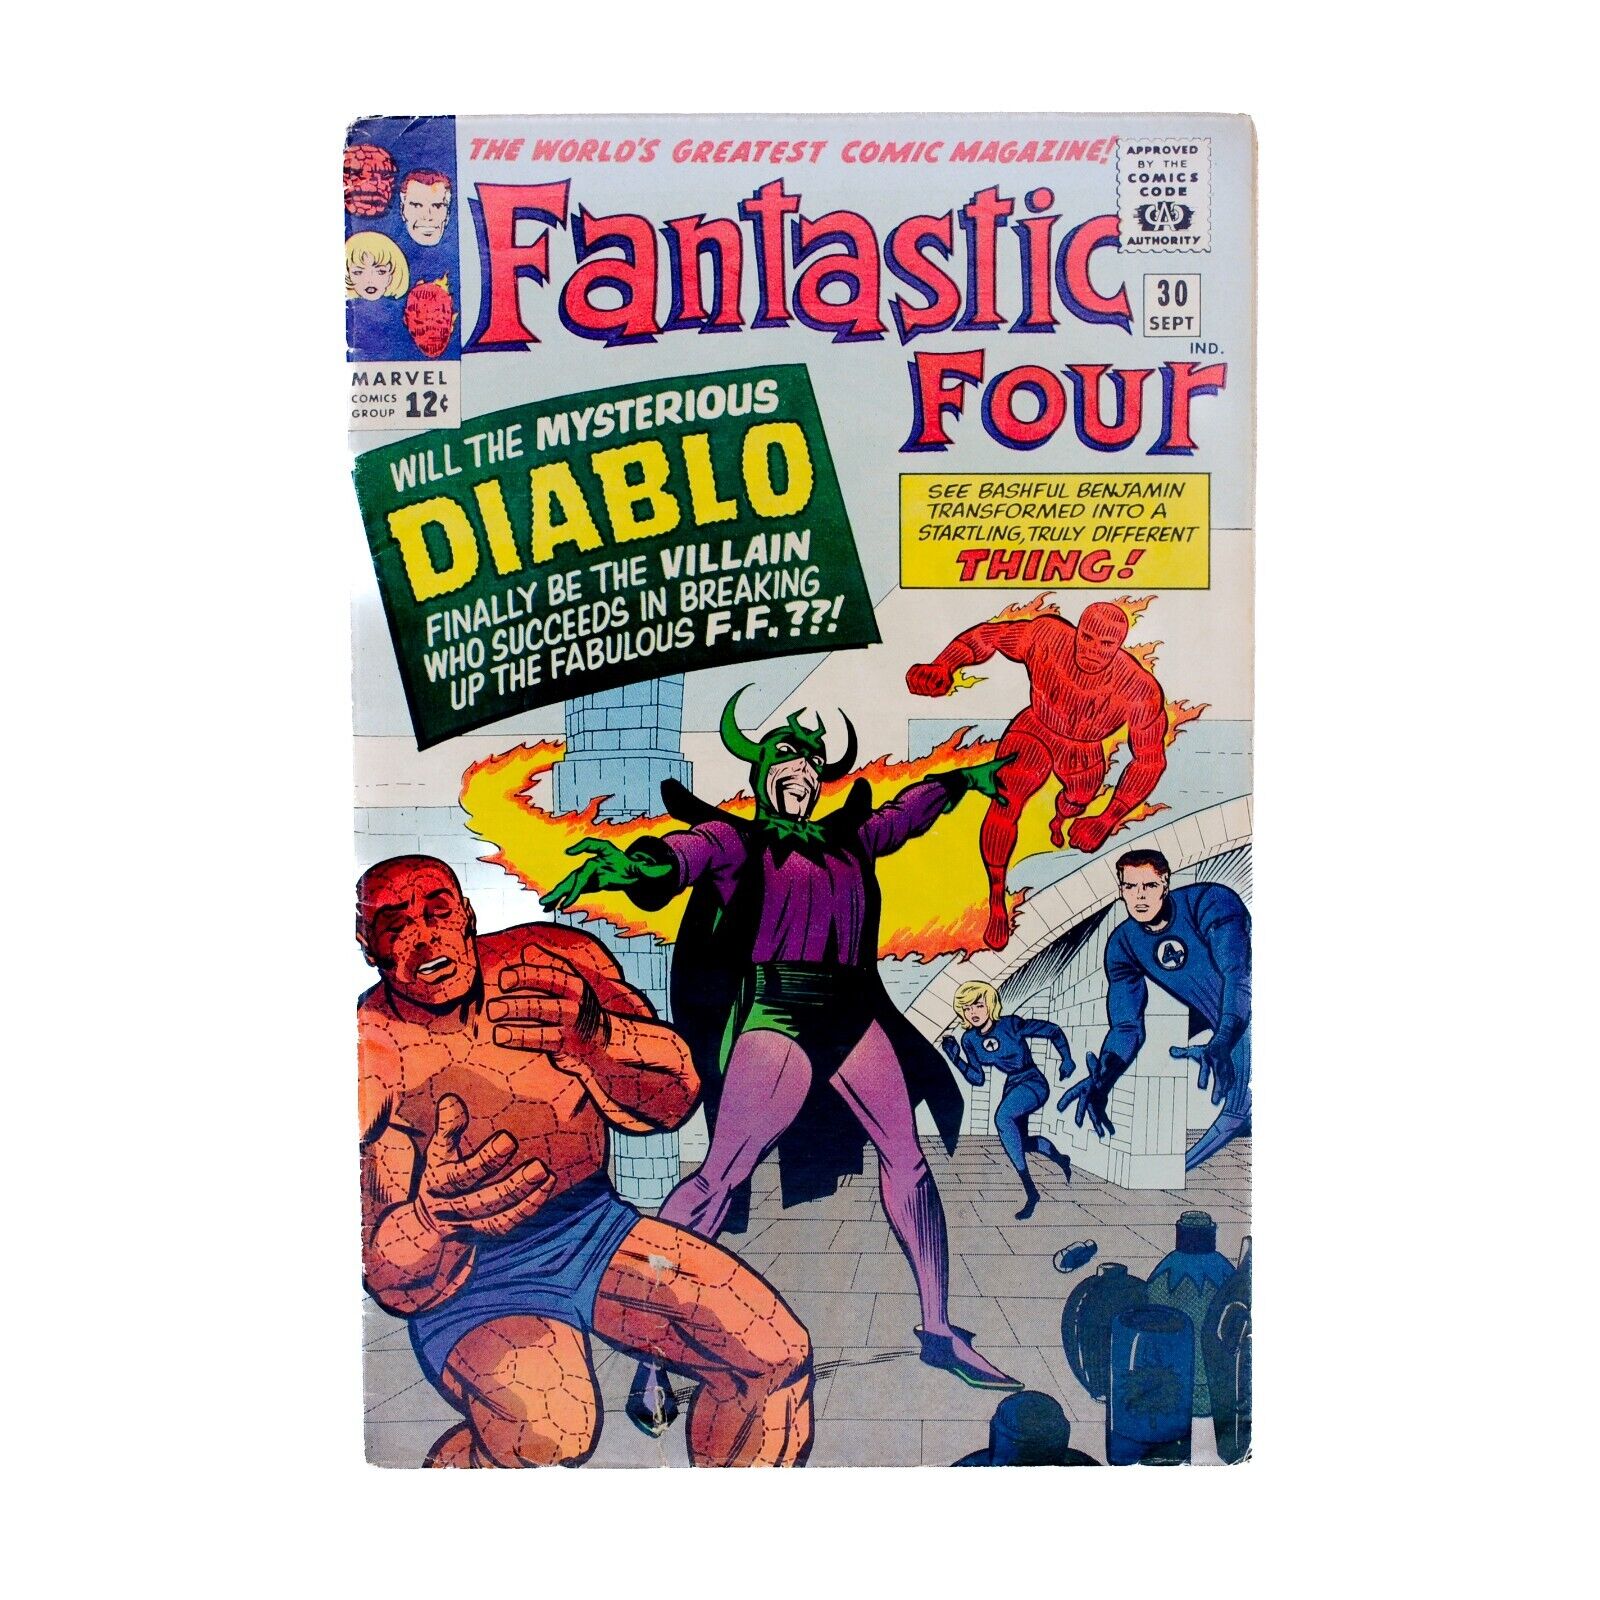 Fantastic Four Volume 1, Issue #30 (September 1964)